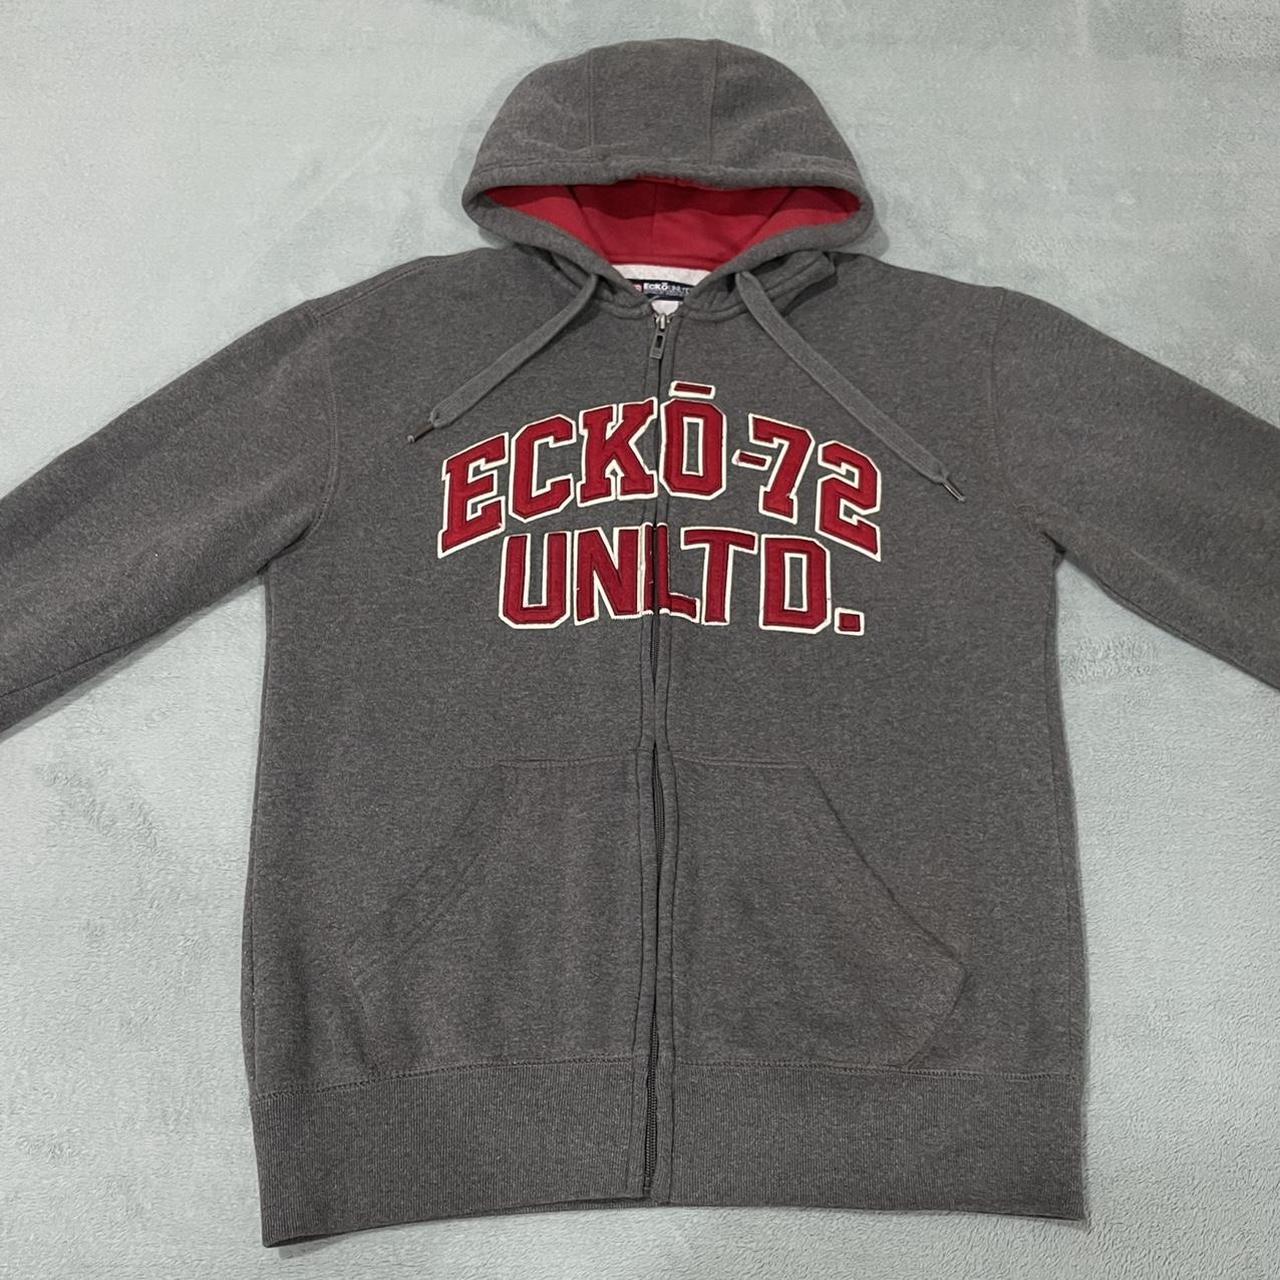 Ecko Unltd 72 Full Zip Hoodie Sweatshirt Gray Red... - Depop